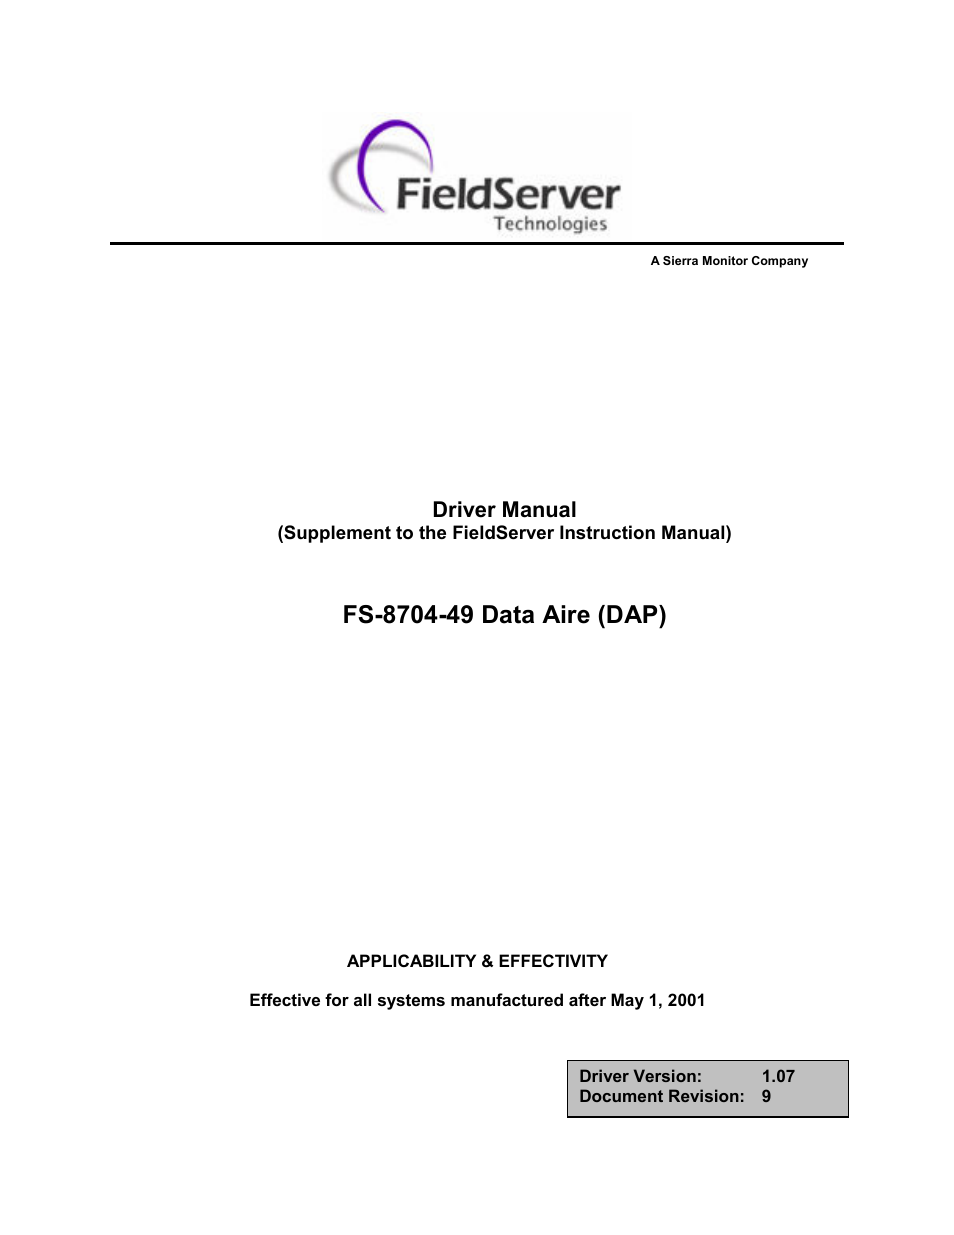 Data Aire (DAP) FS-8704-49